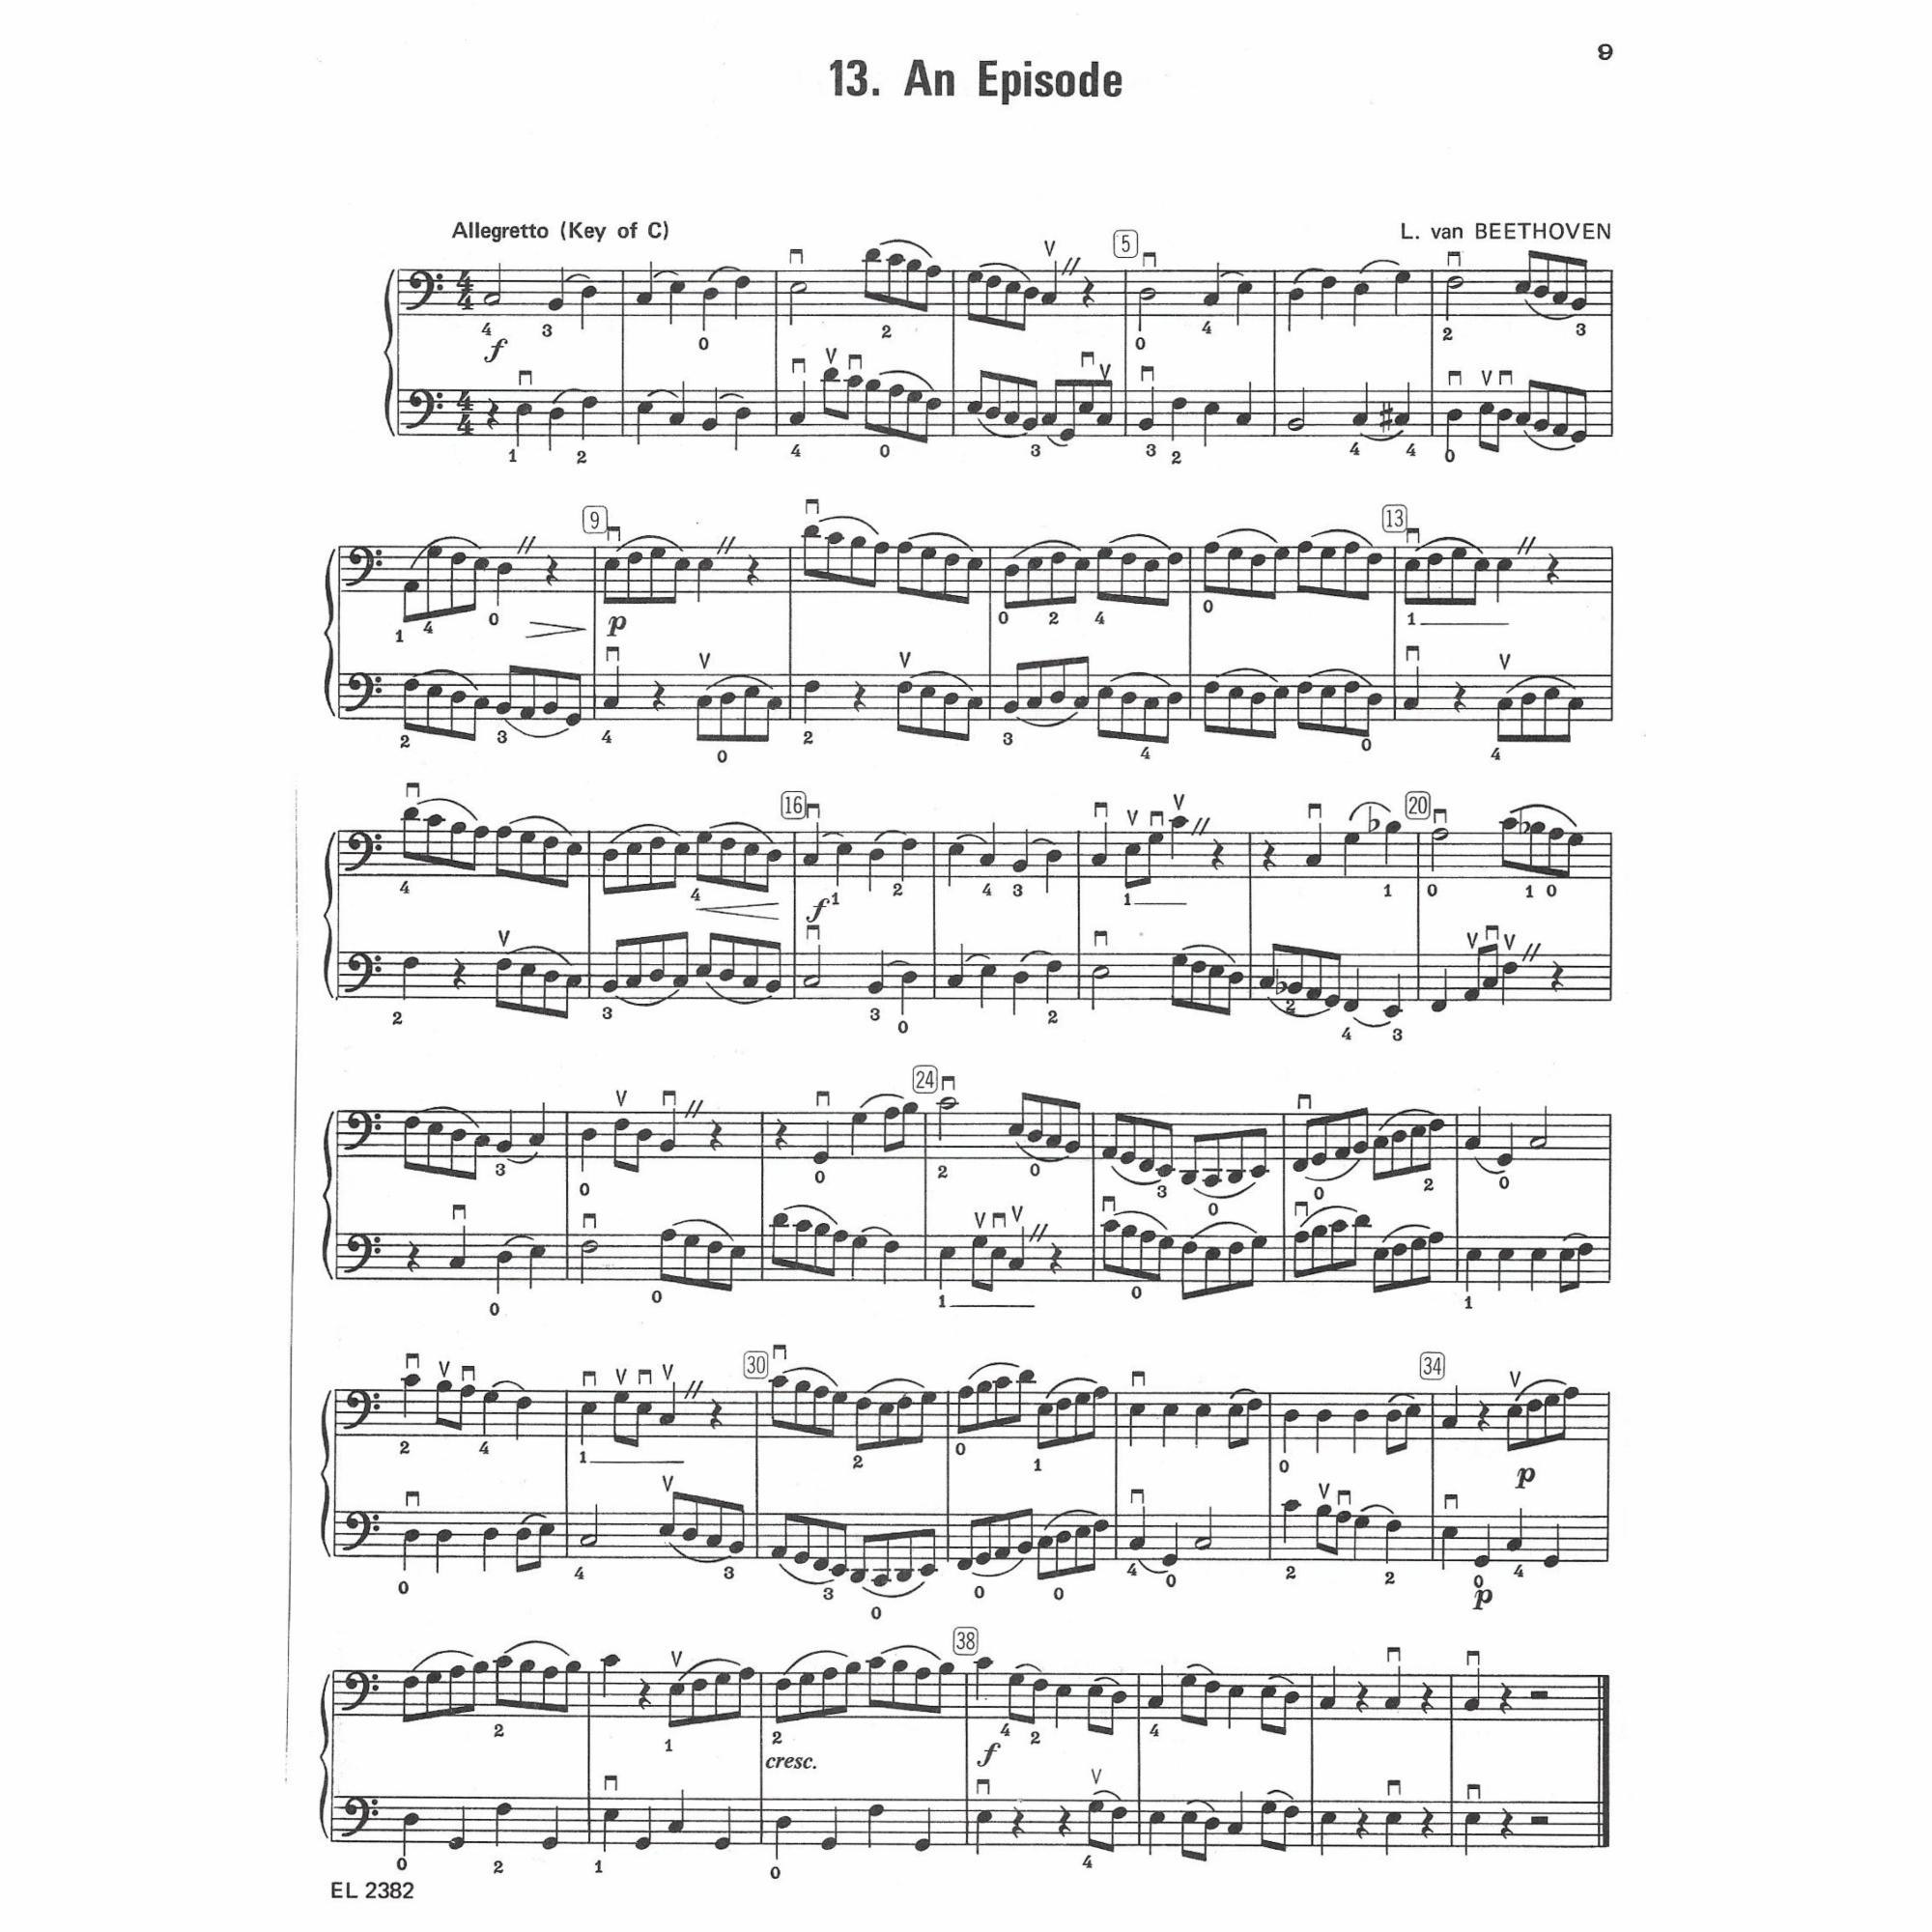 Sample: Cello (Pg. 9)